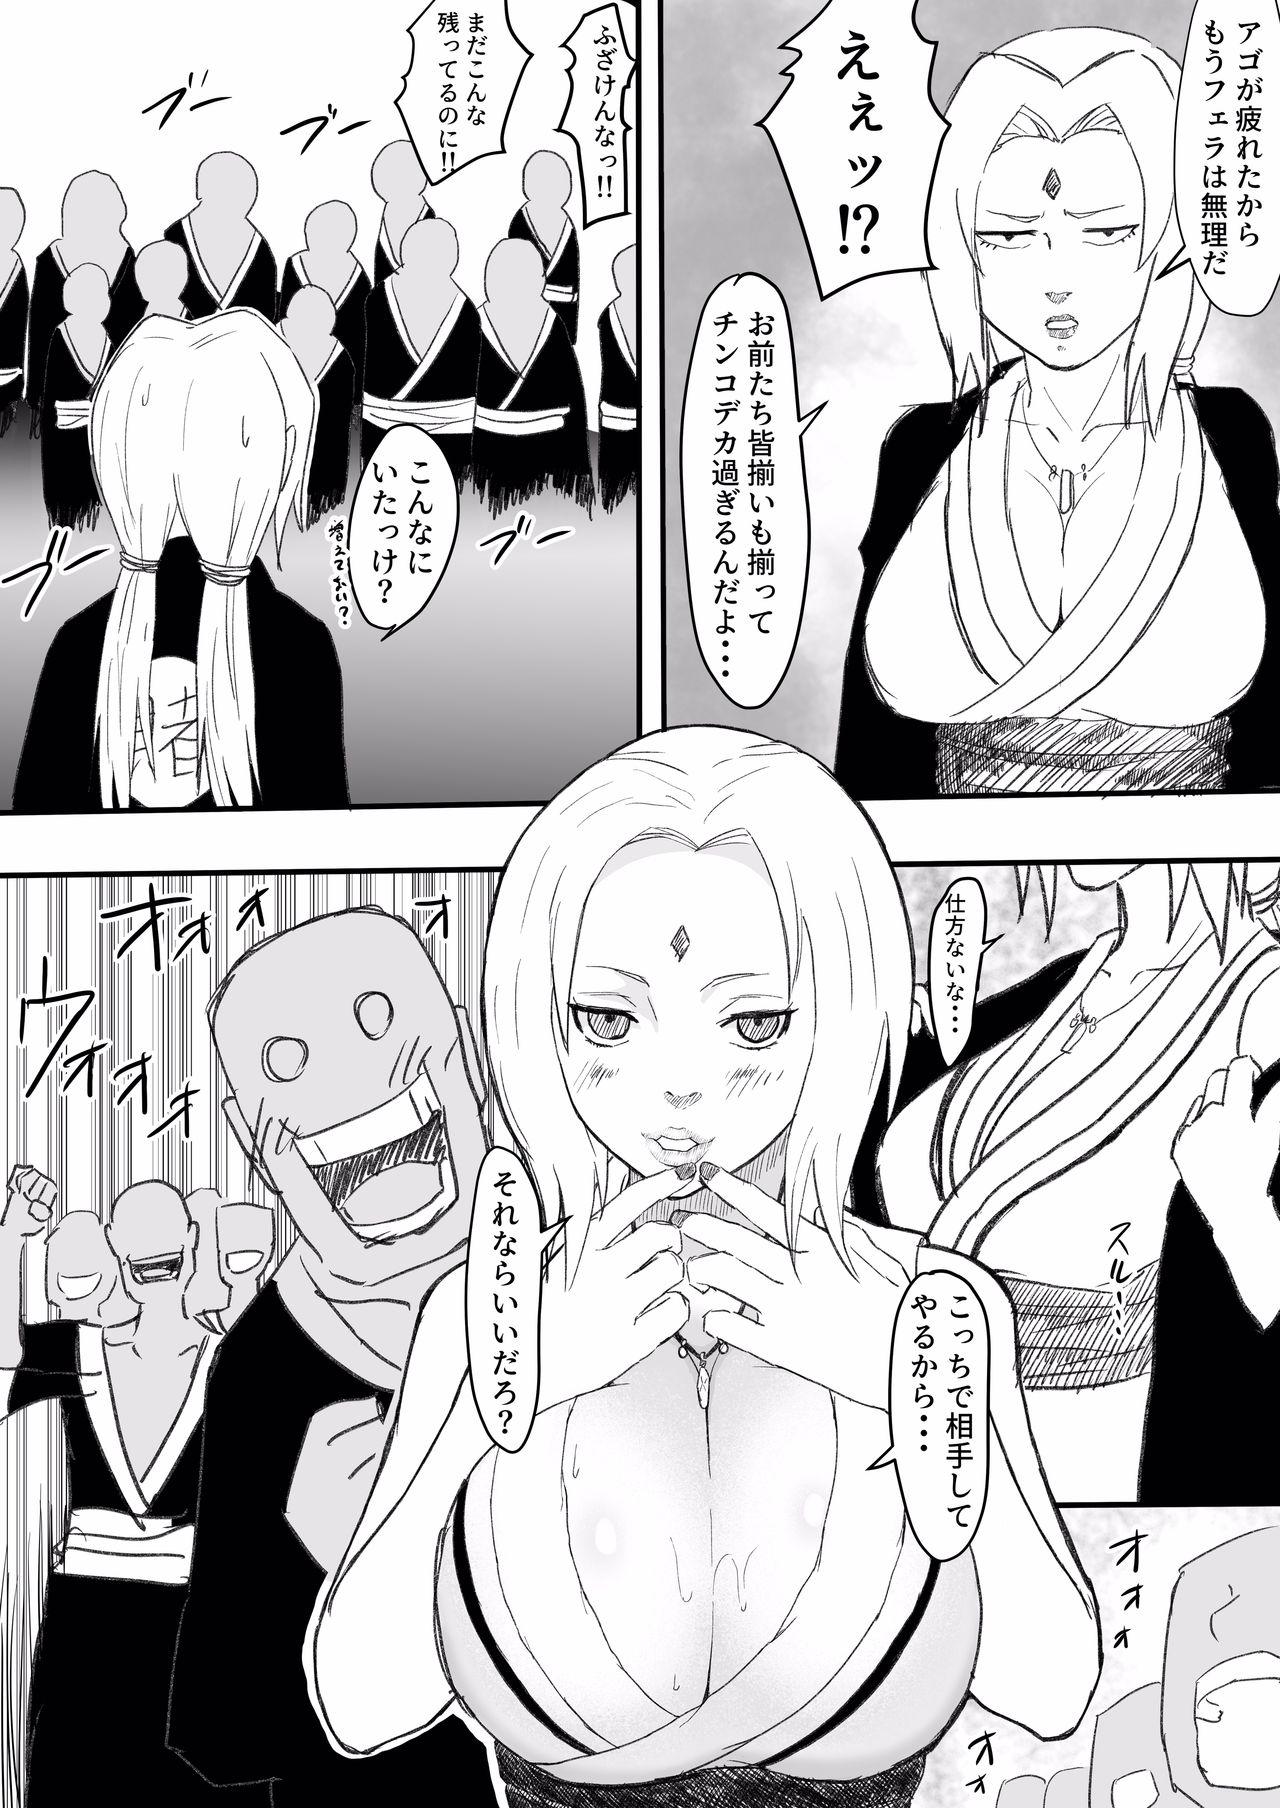 Rubdown Te Ero Manga - Naruto Cachonda - Page 5